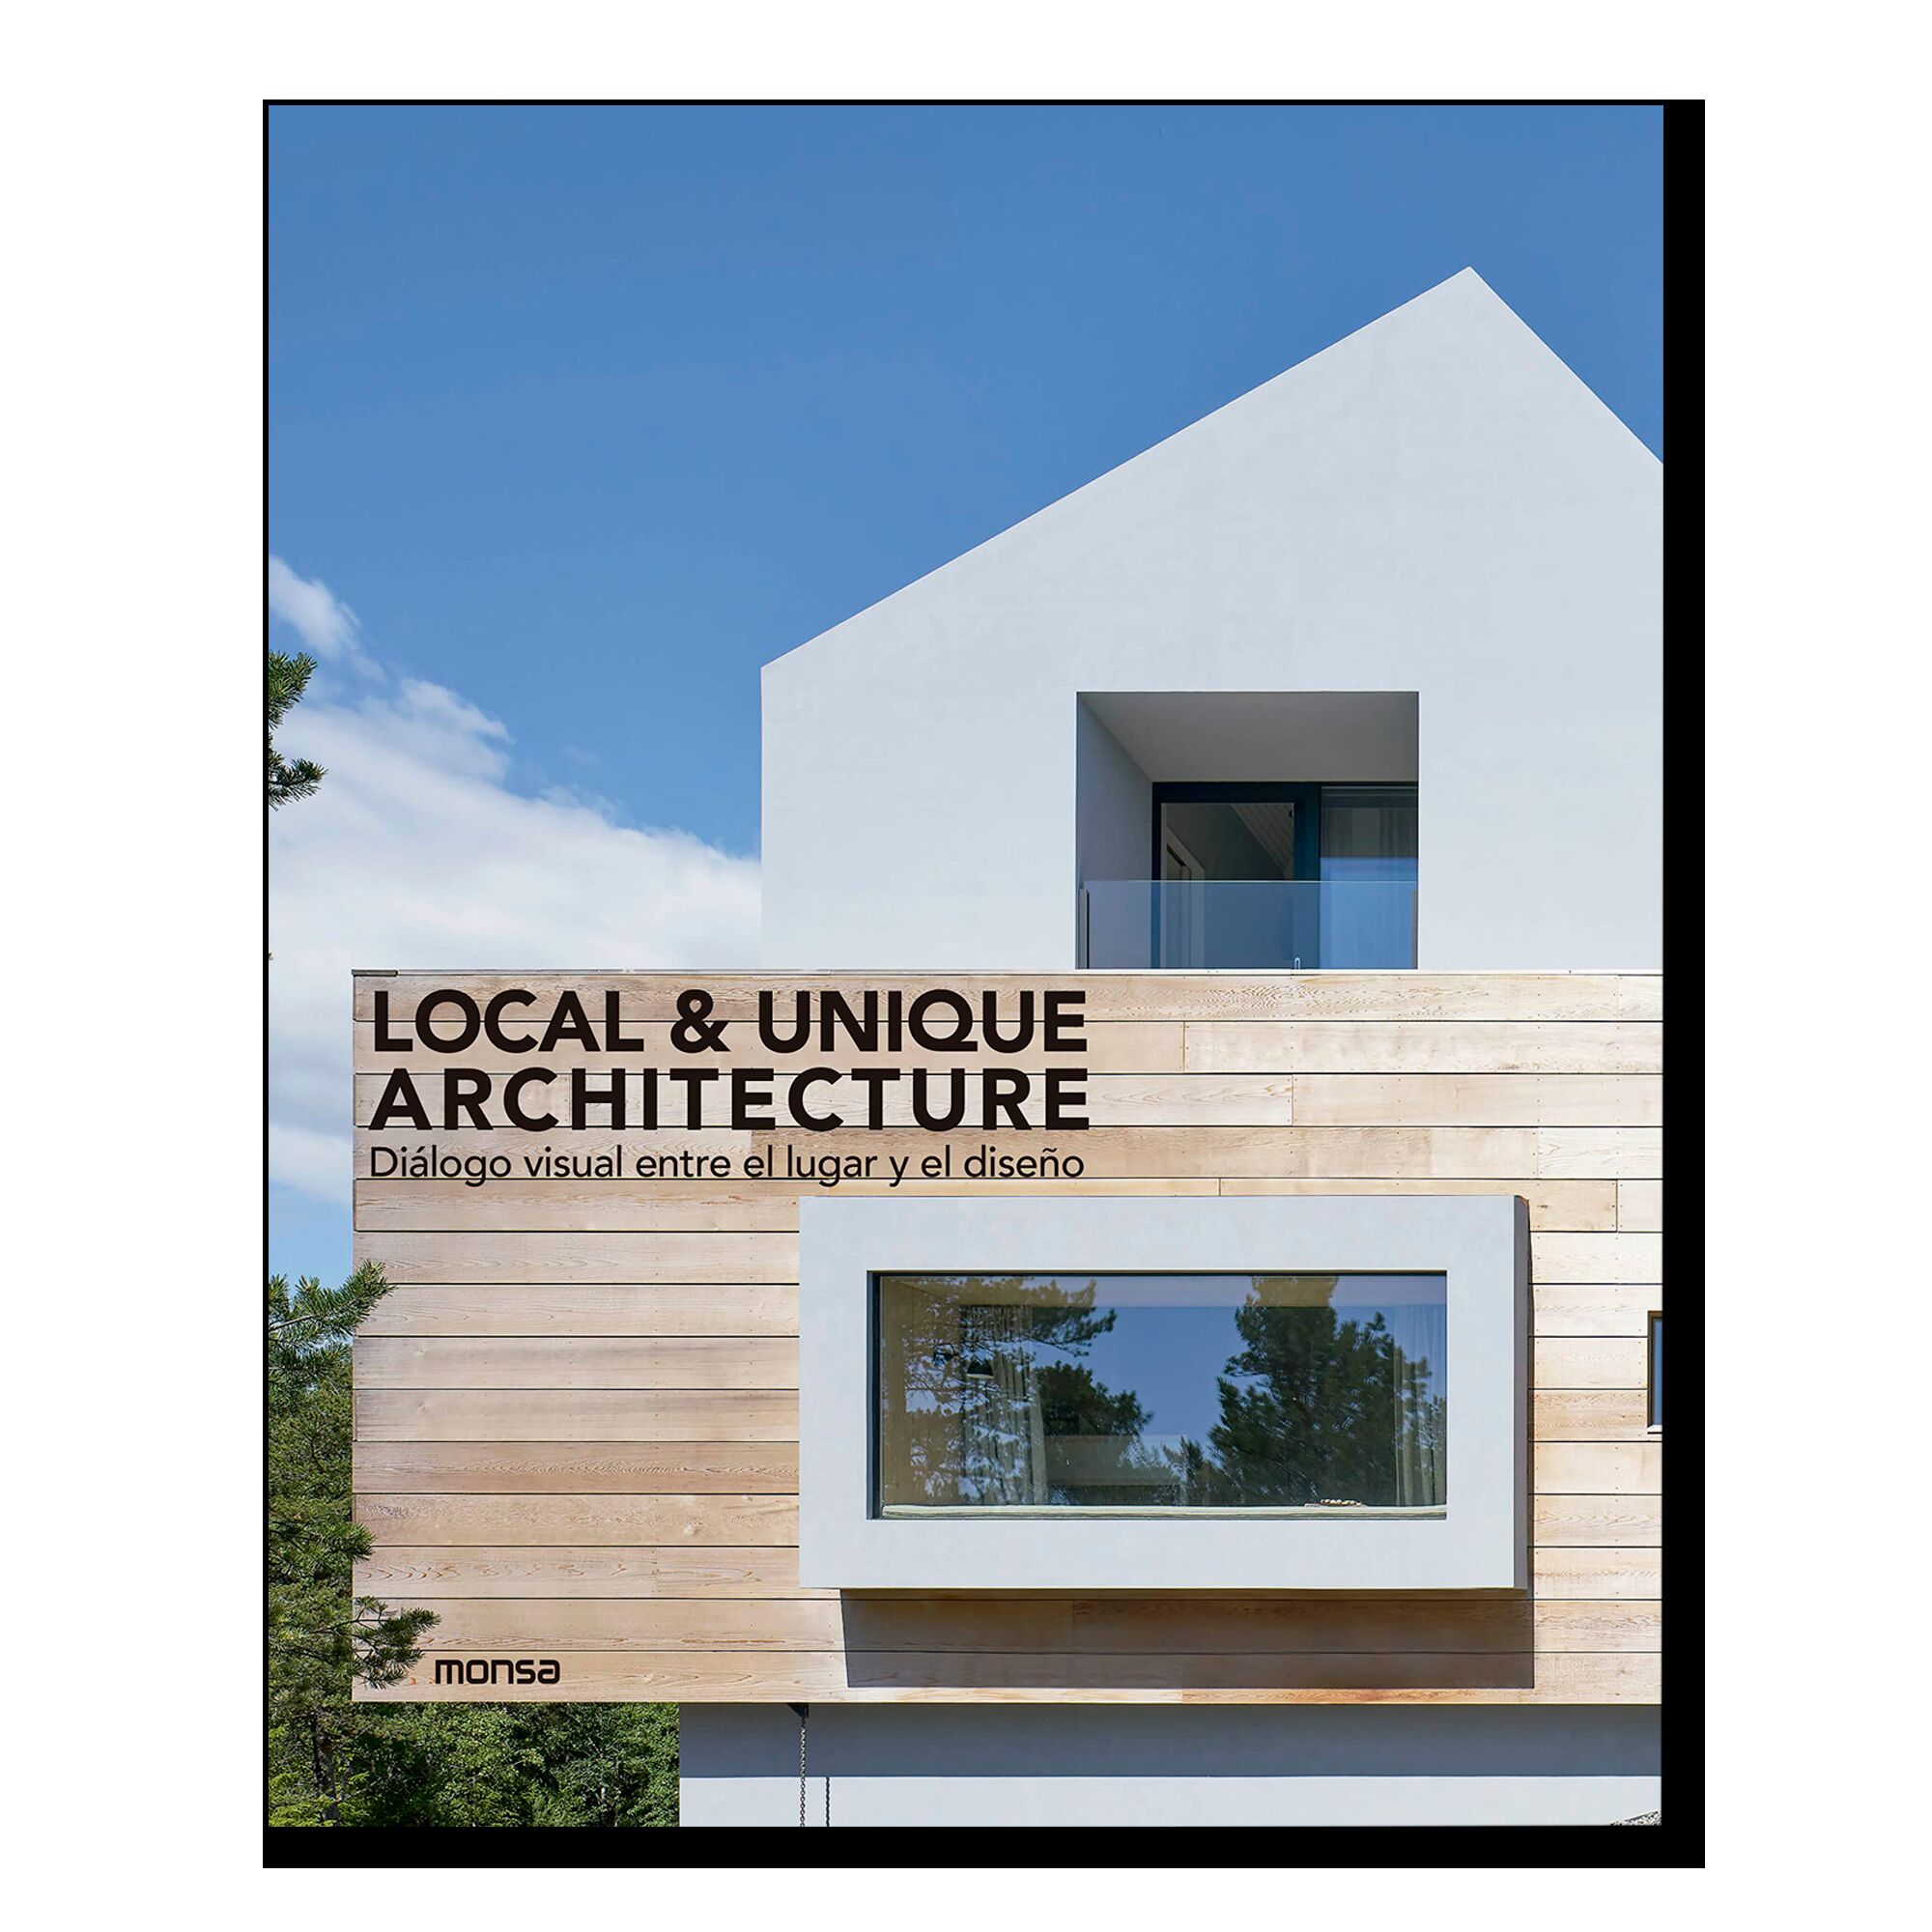 Local & Unique Architecture